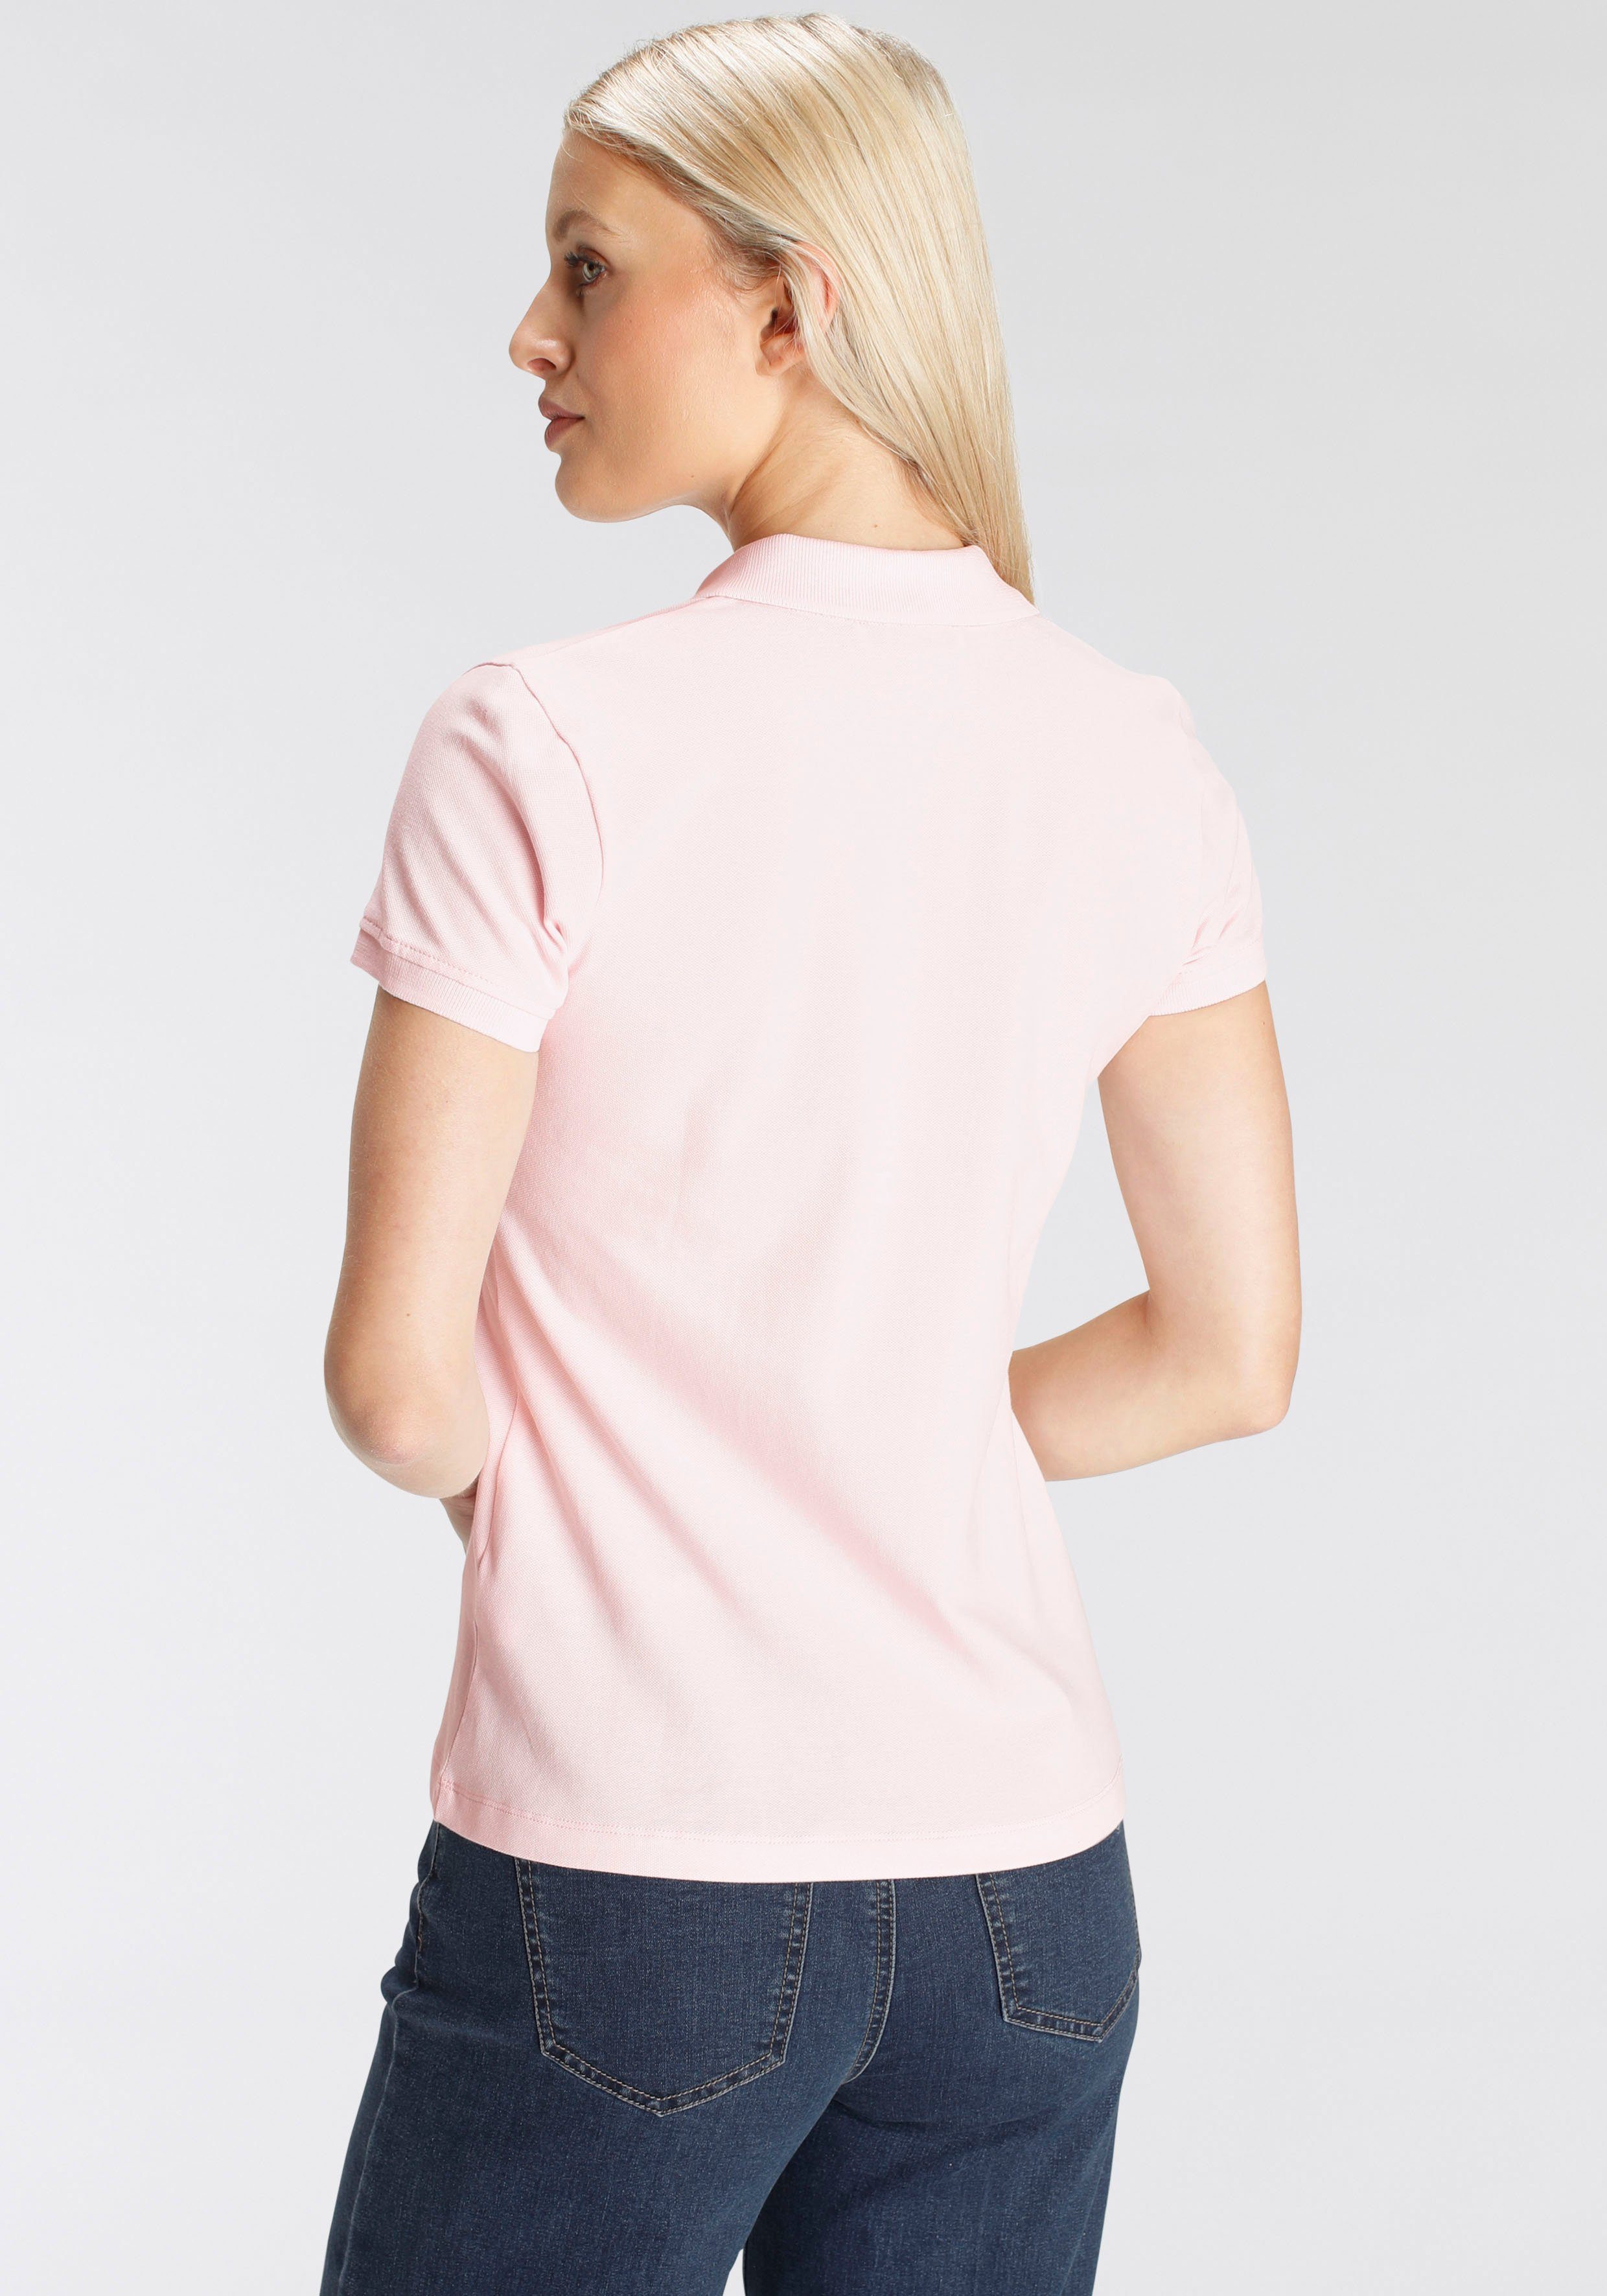 DELMAO Poloshirt in Form - Farben verschiedenen NEUE in rosa klassischer MARKE